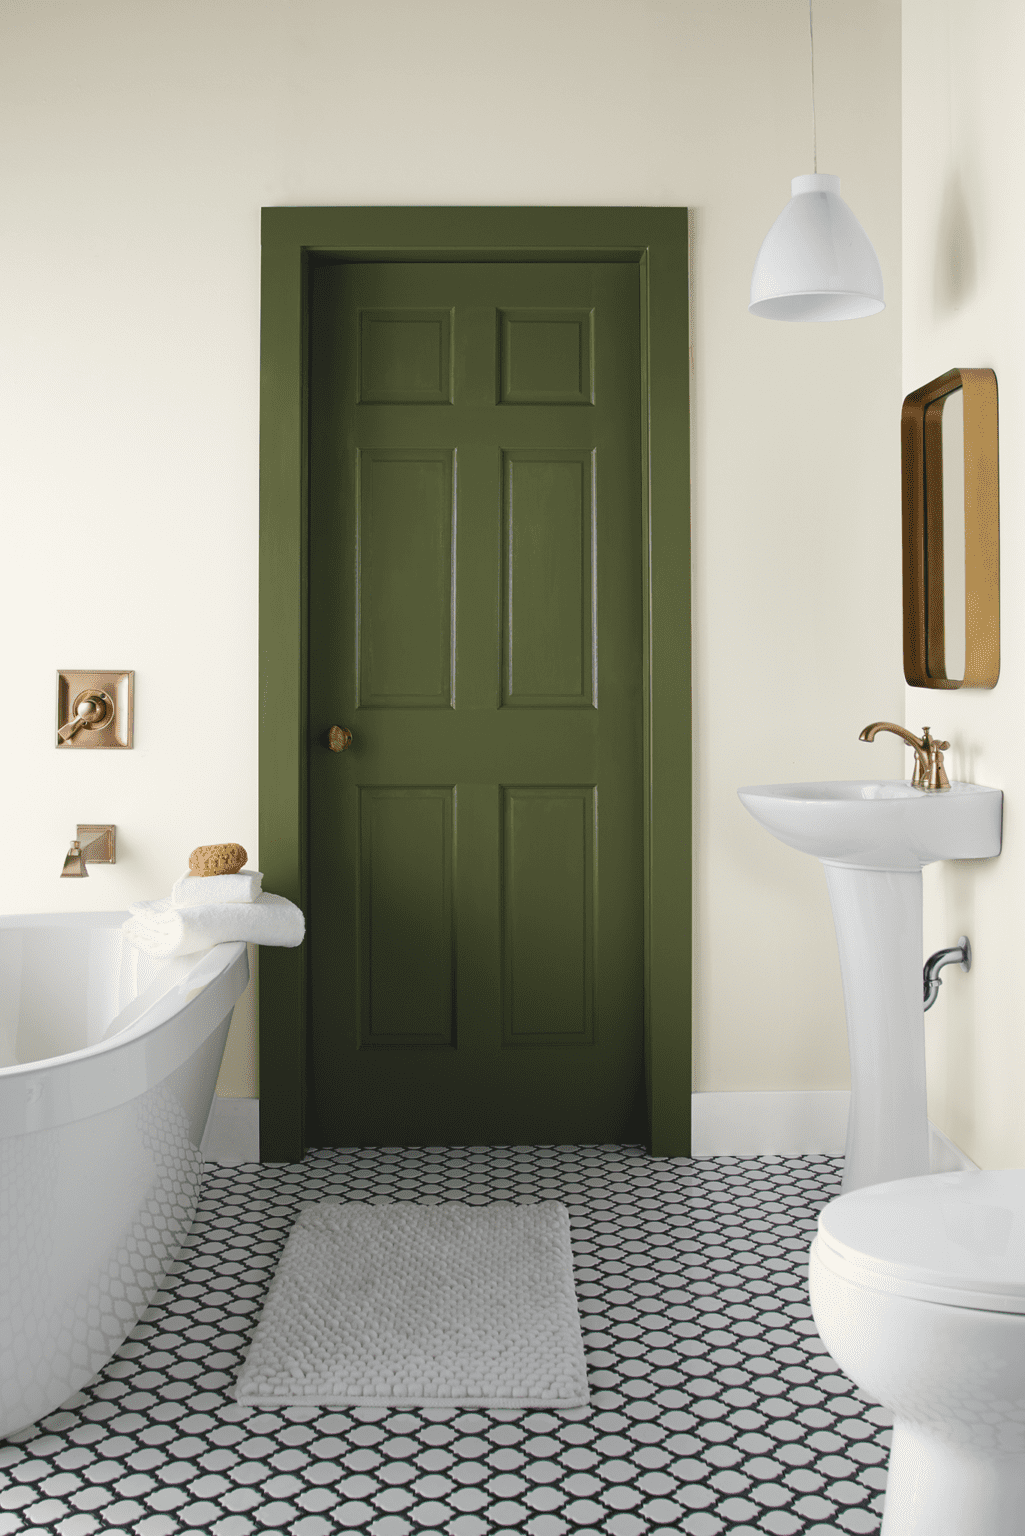 Baño con paredes blancas, suelo con porcelanato hidráulico y una puerta y su marco pintados con color verde olivo.